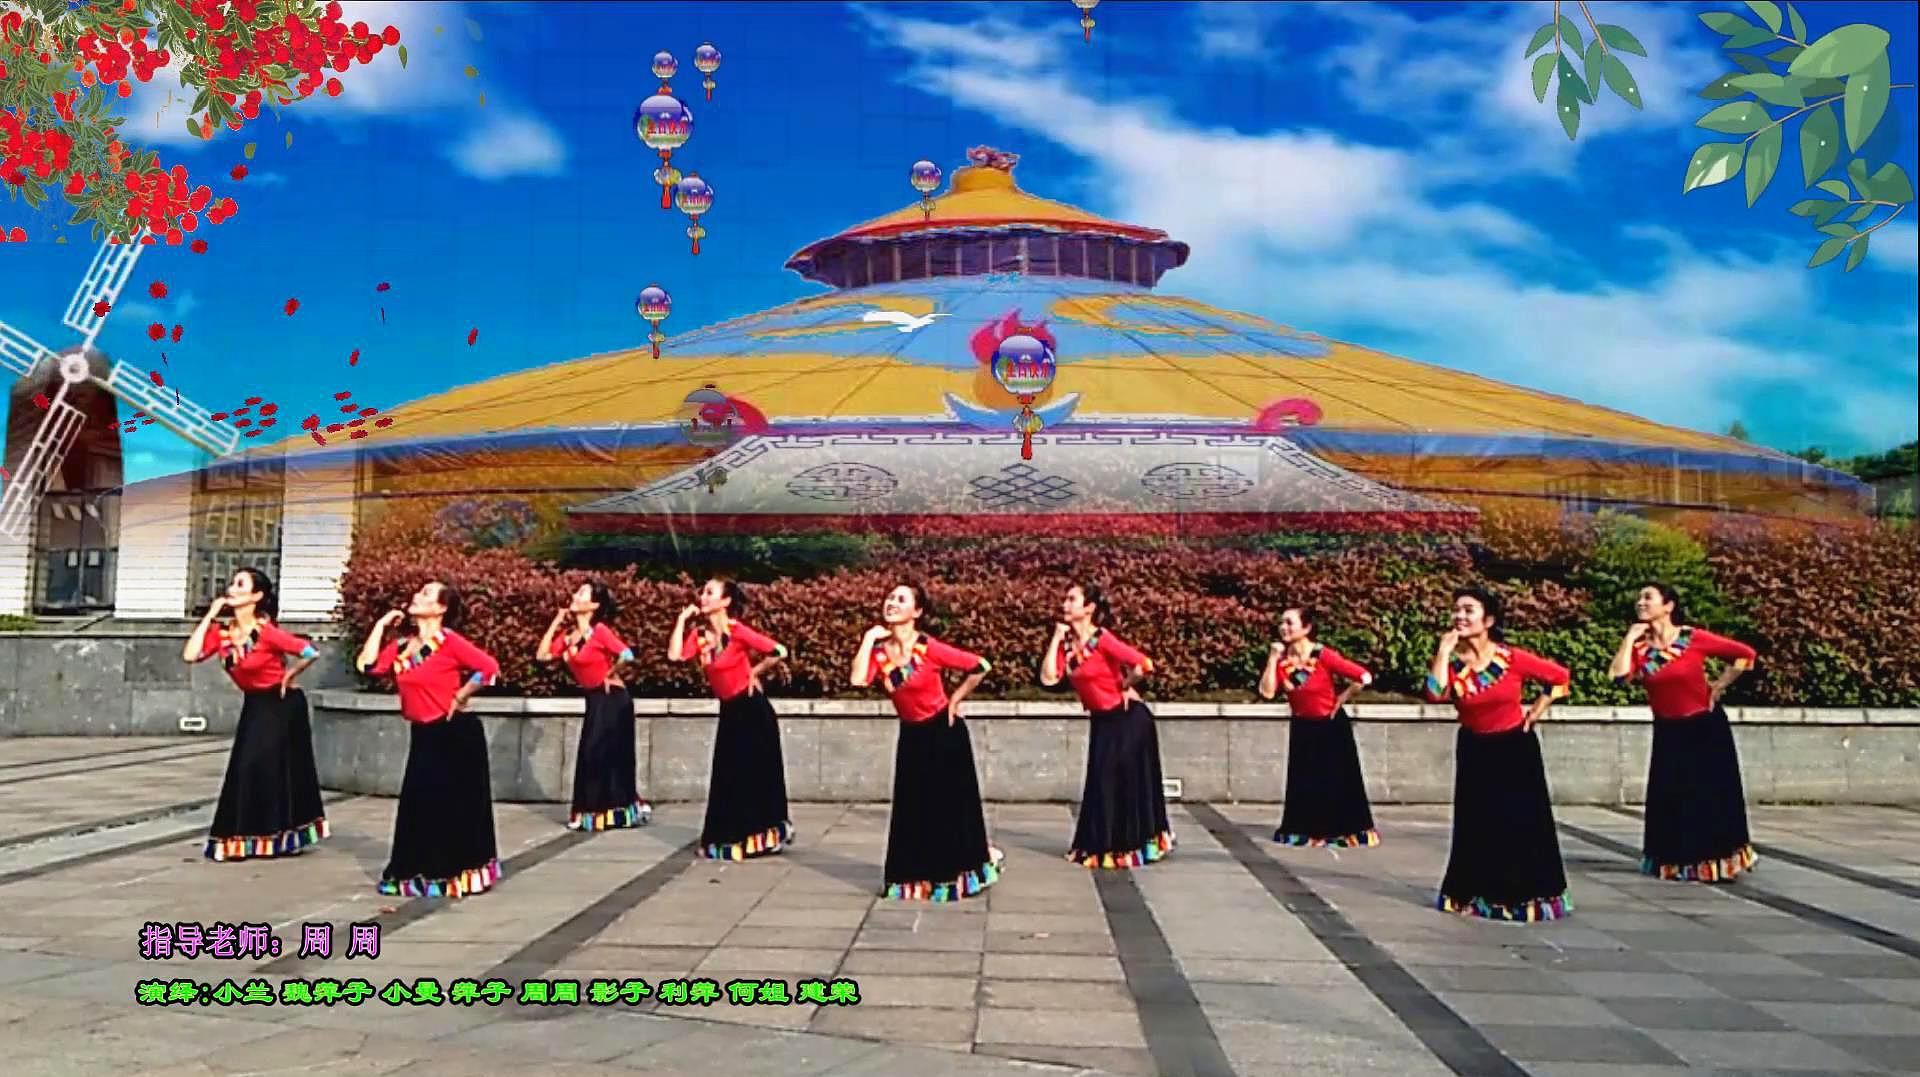 优美藏族情歌广场舞《唐古拉》充满民族风情